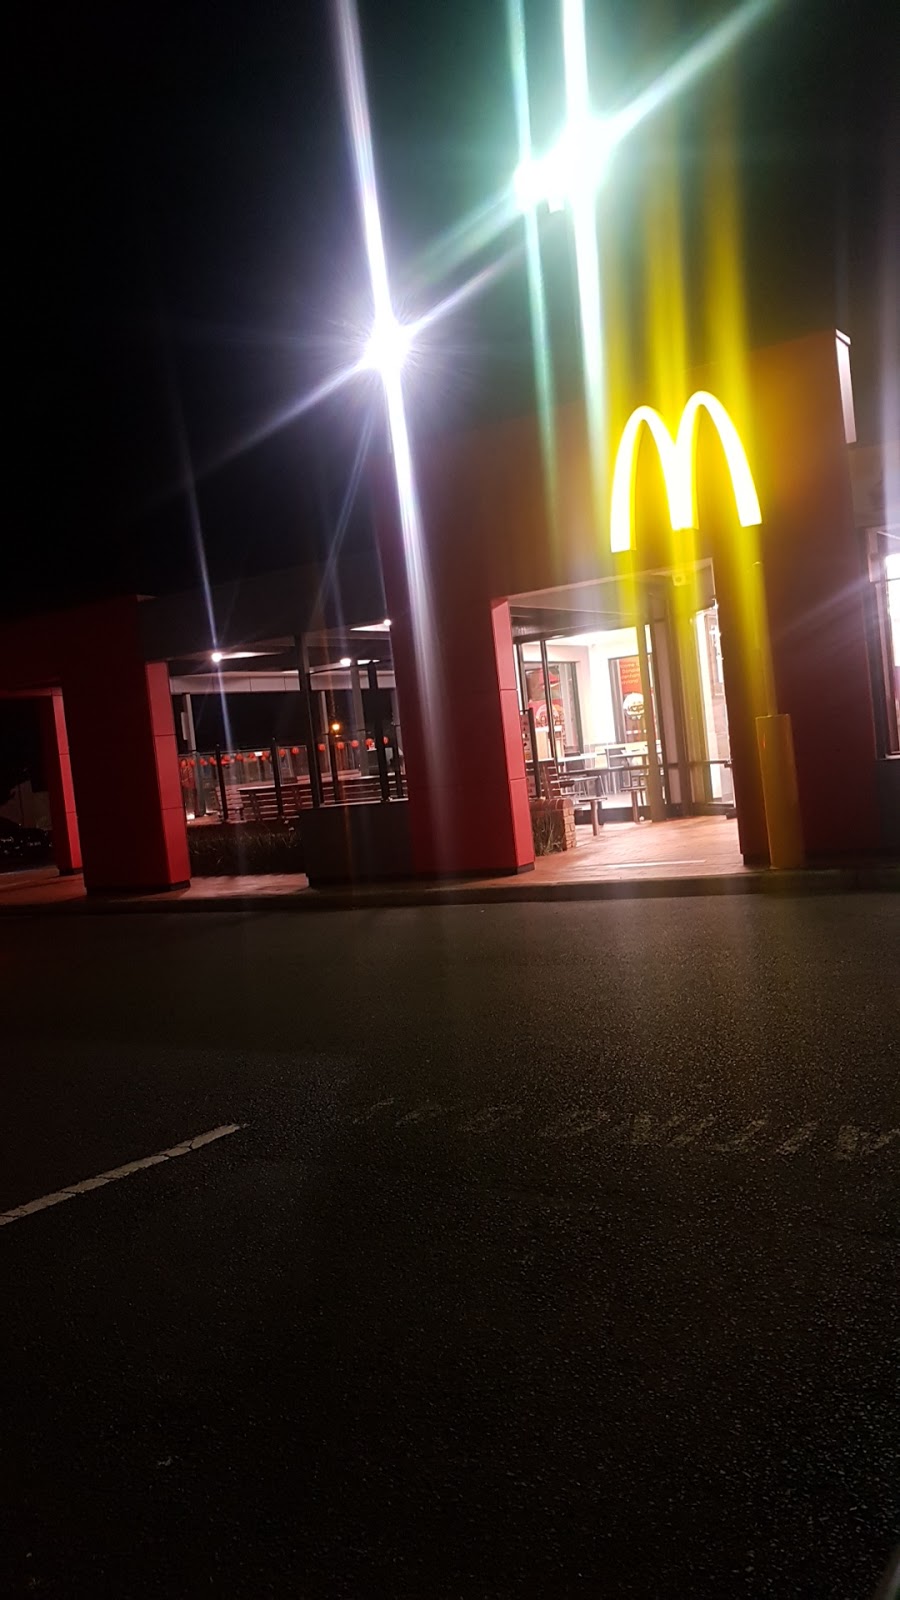 McDonalds Sydenham | meal takeaway | Cnr Melton Highway &, Calder Park Dr, Sydenham VIC 3038, Australia | 0393905611 OR +61 3 9390 5611